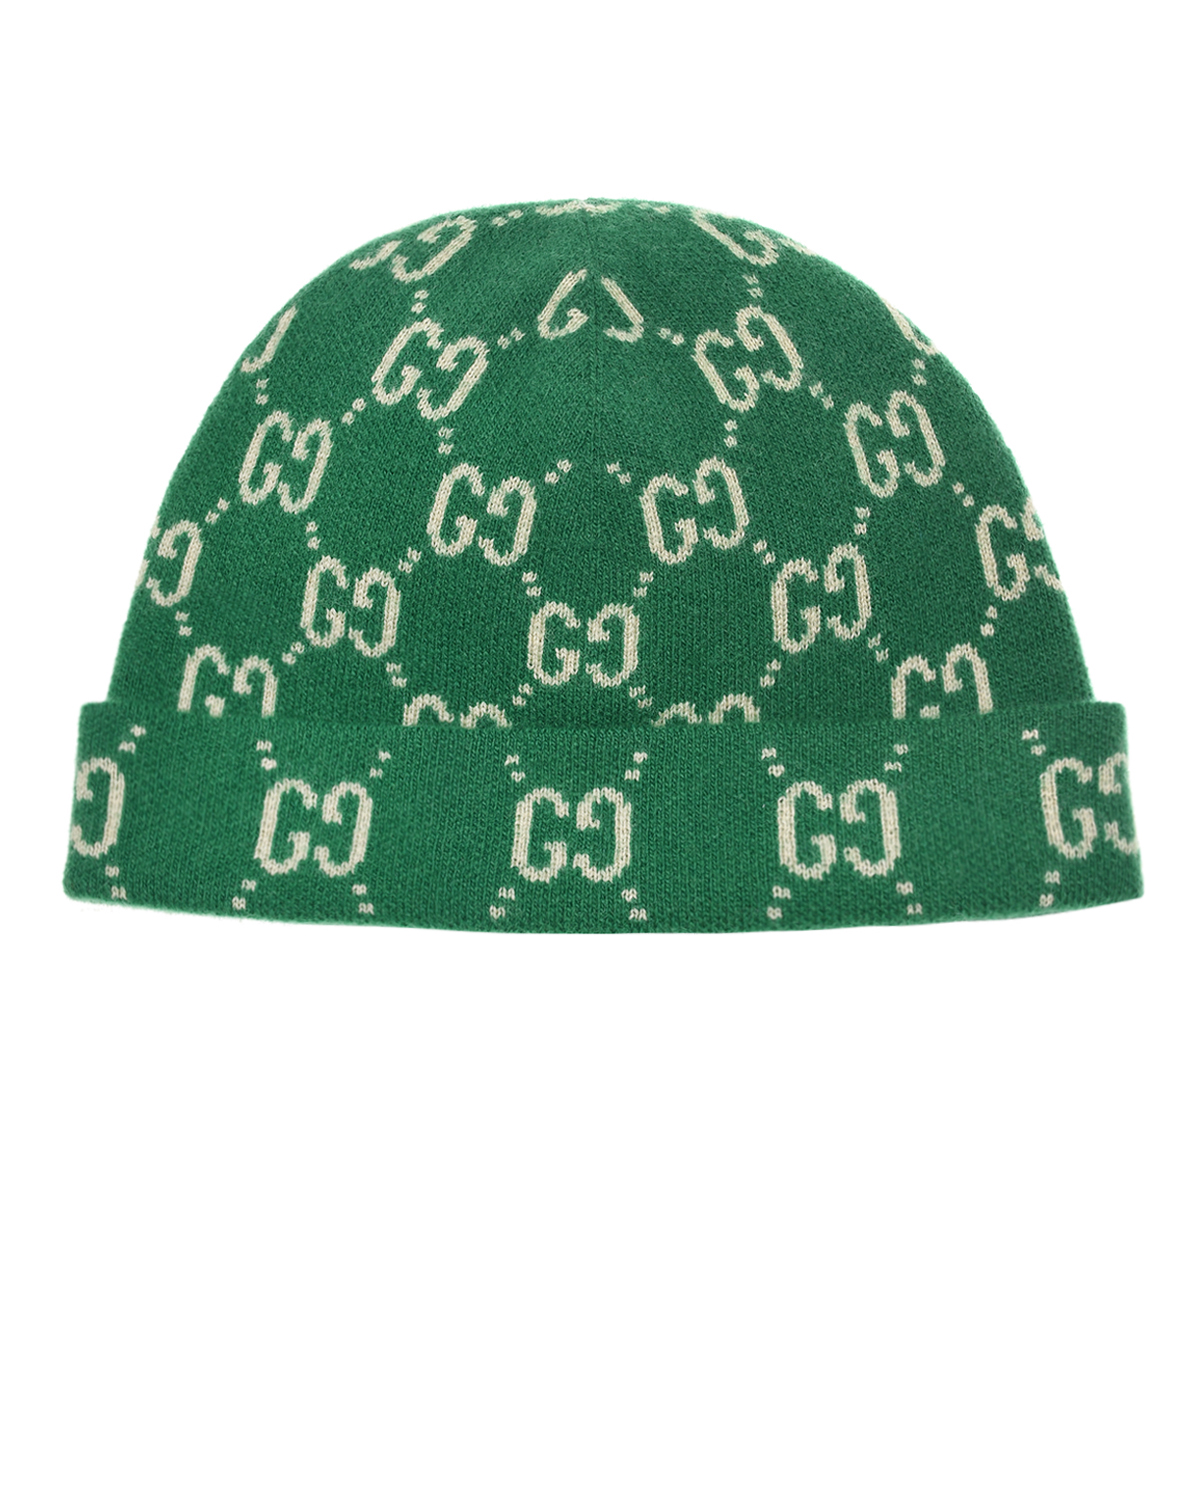 Где купить Зеленая шапка из шерсти с узором GG GUCCI детская Gucci 